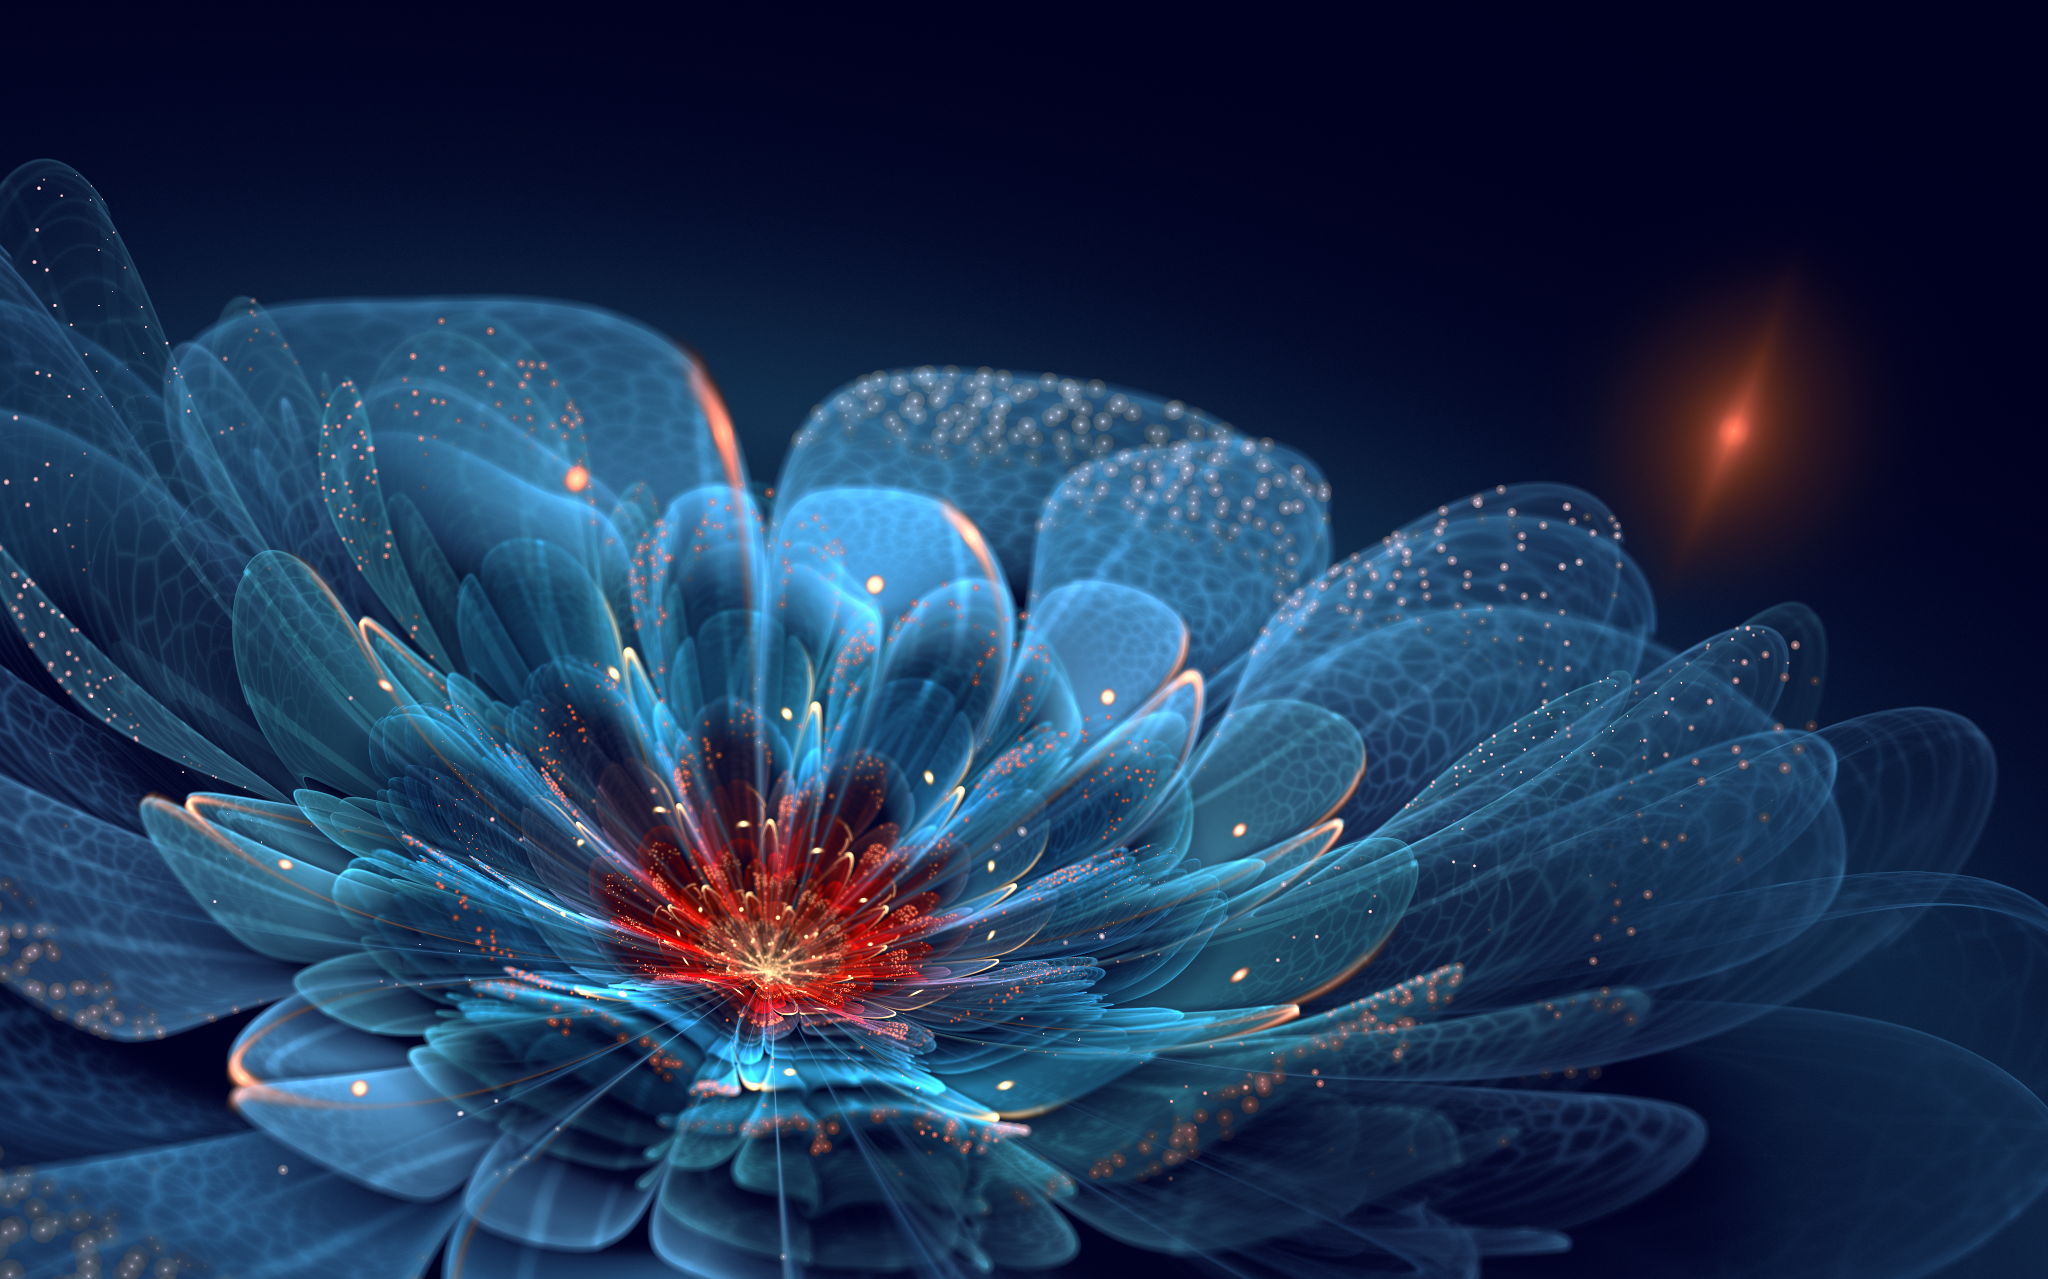 fond d'écran warna warni keren,bleu,art fractal,la nature,l'eau,fleur